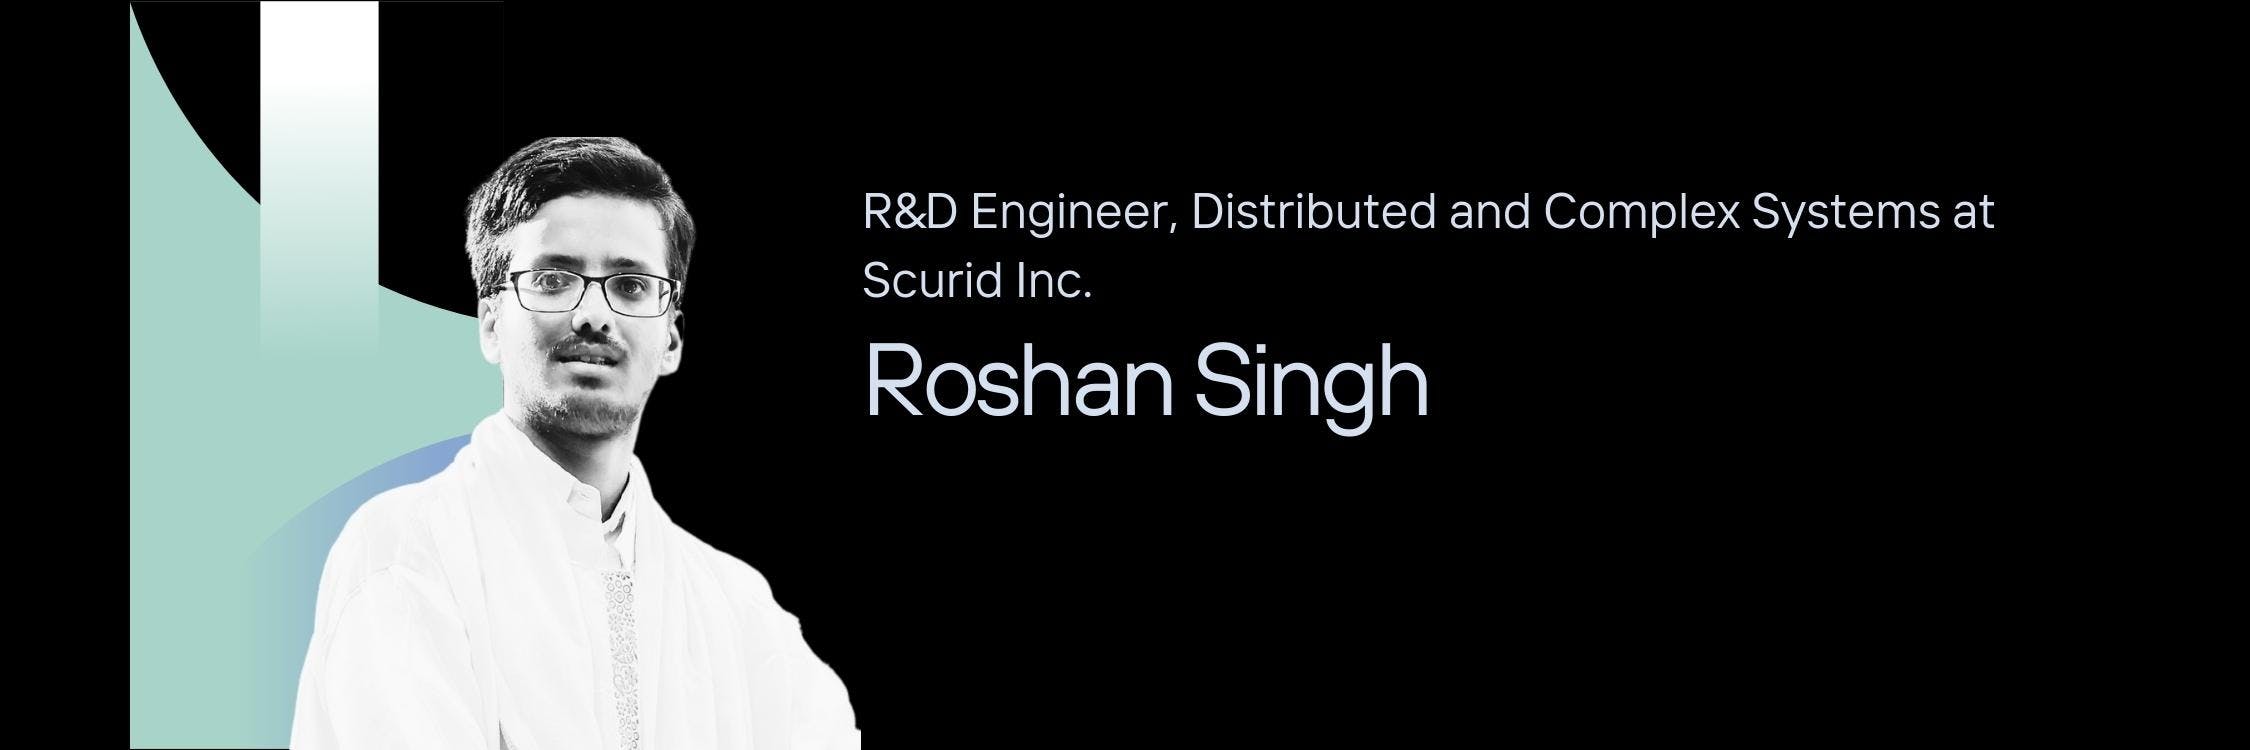 Roshan Singh